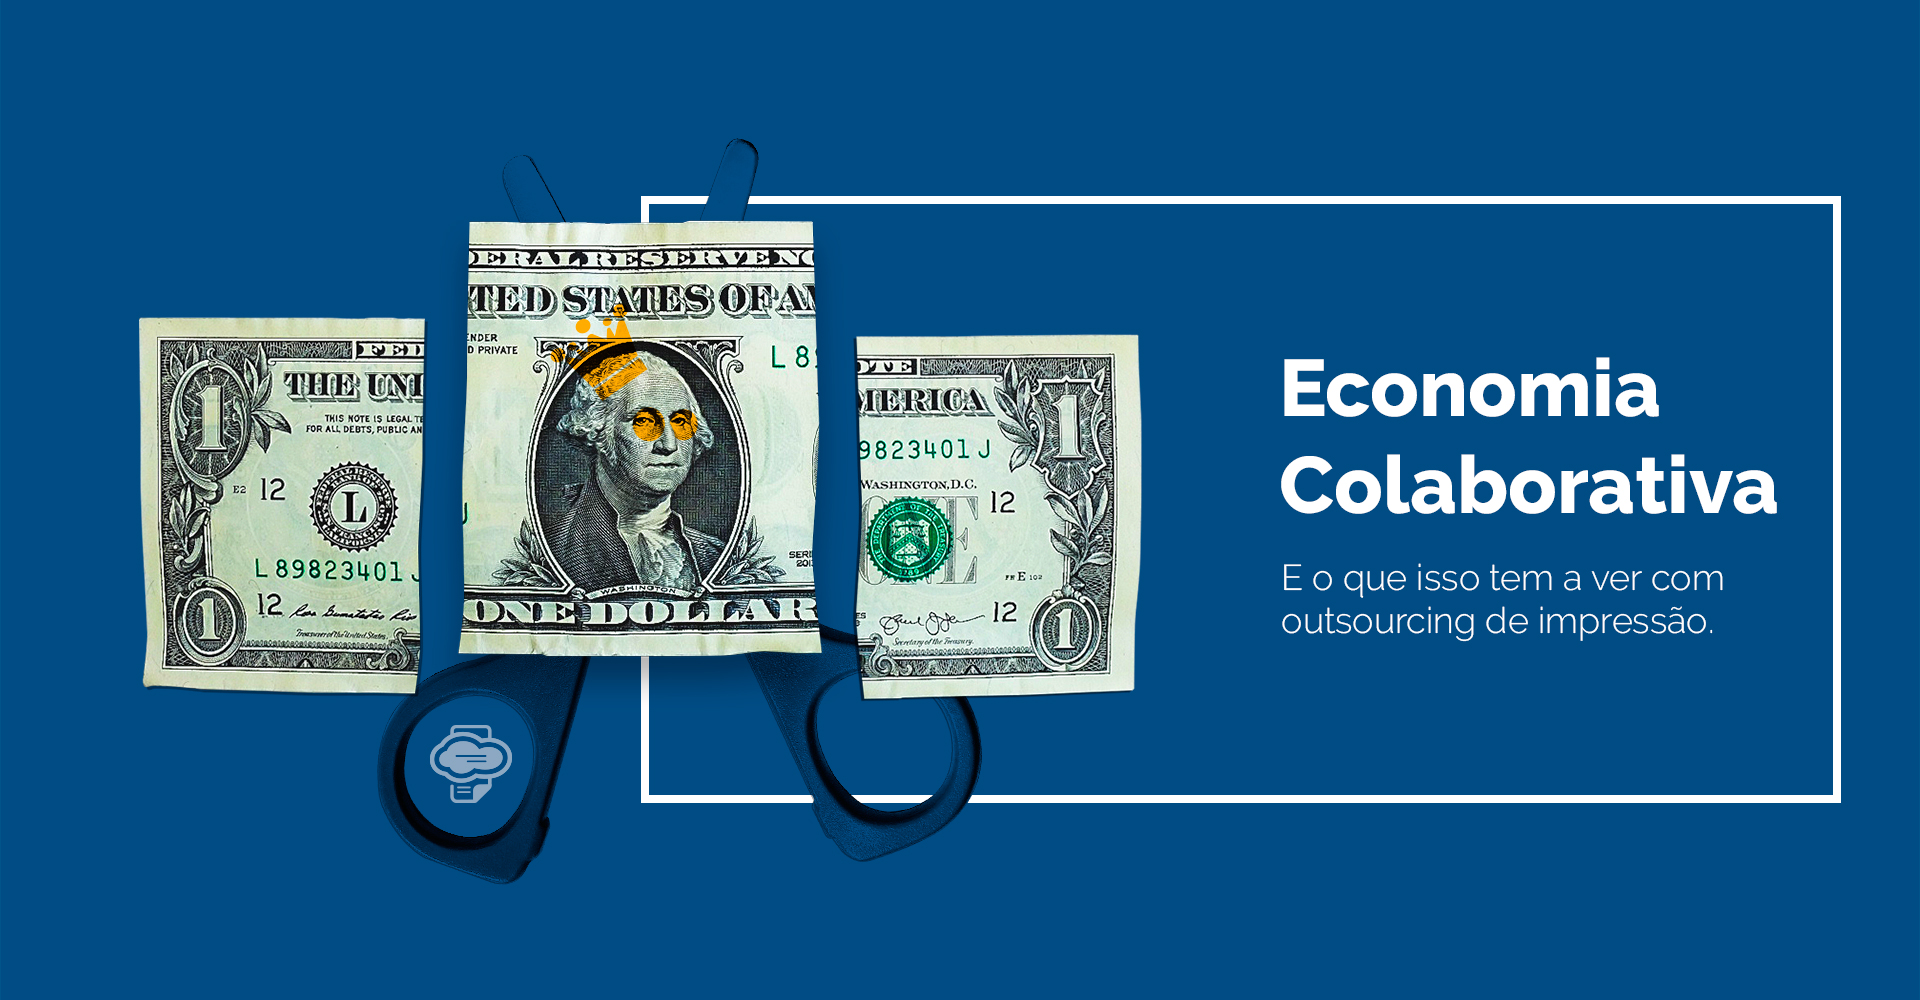 Imagem de uma nota de um dólar cortada em três partes, atrás da parte do meio está a tesoura. A imagem representa a economia colaborativa.